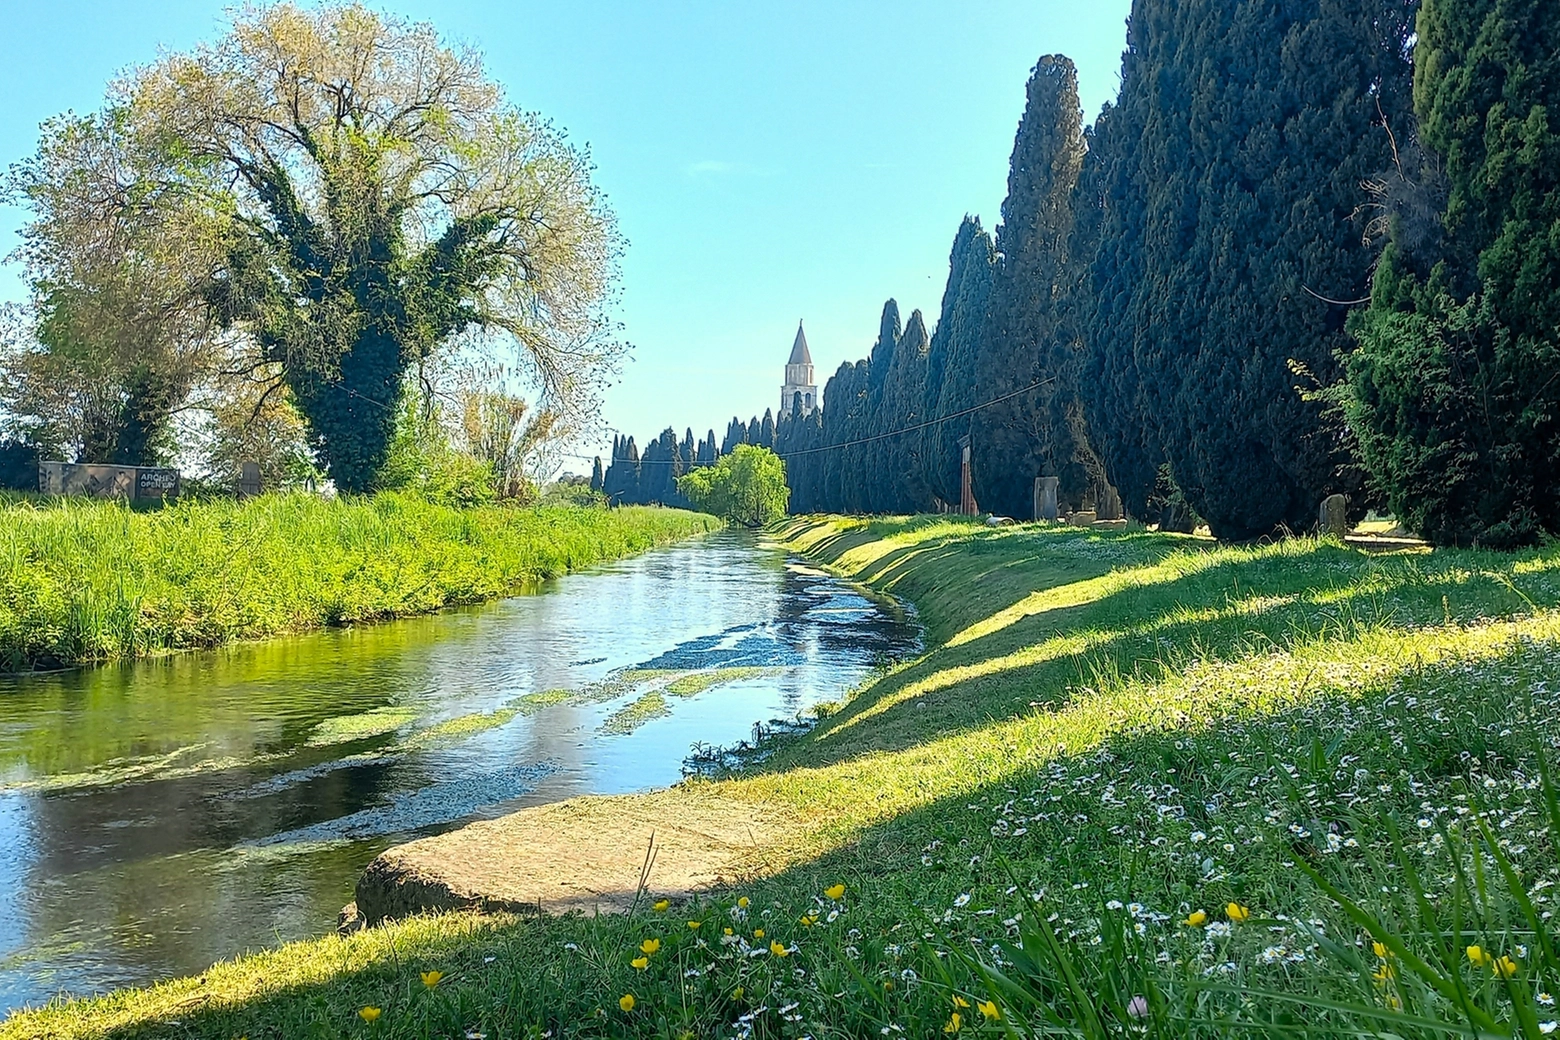 Duemila anni fa questo fiume, ad Aquileia, aveva un alveo di quasi 50 metri ed aveva un porto fluviale di primaria importanza